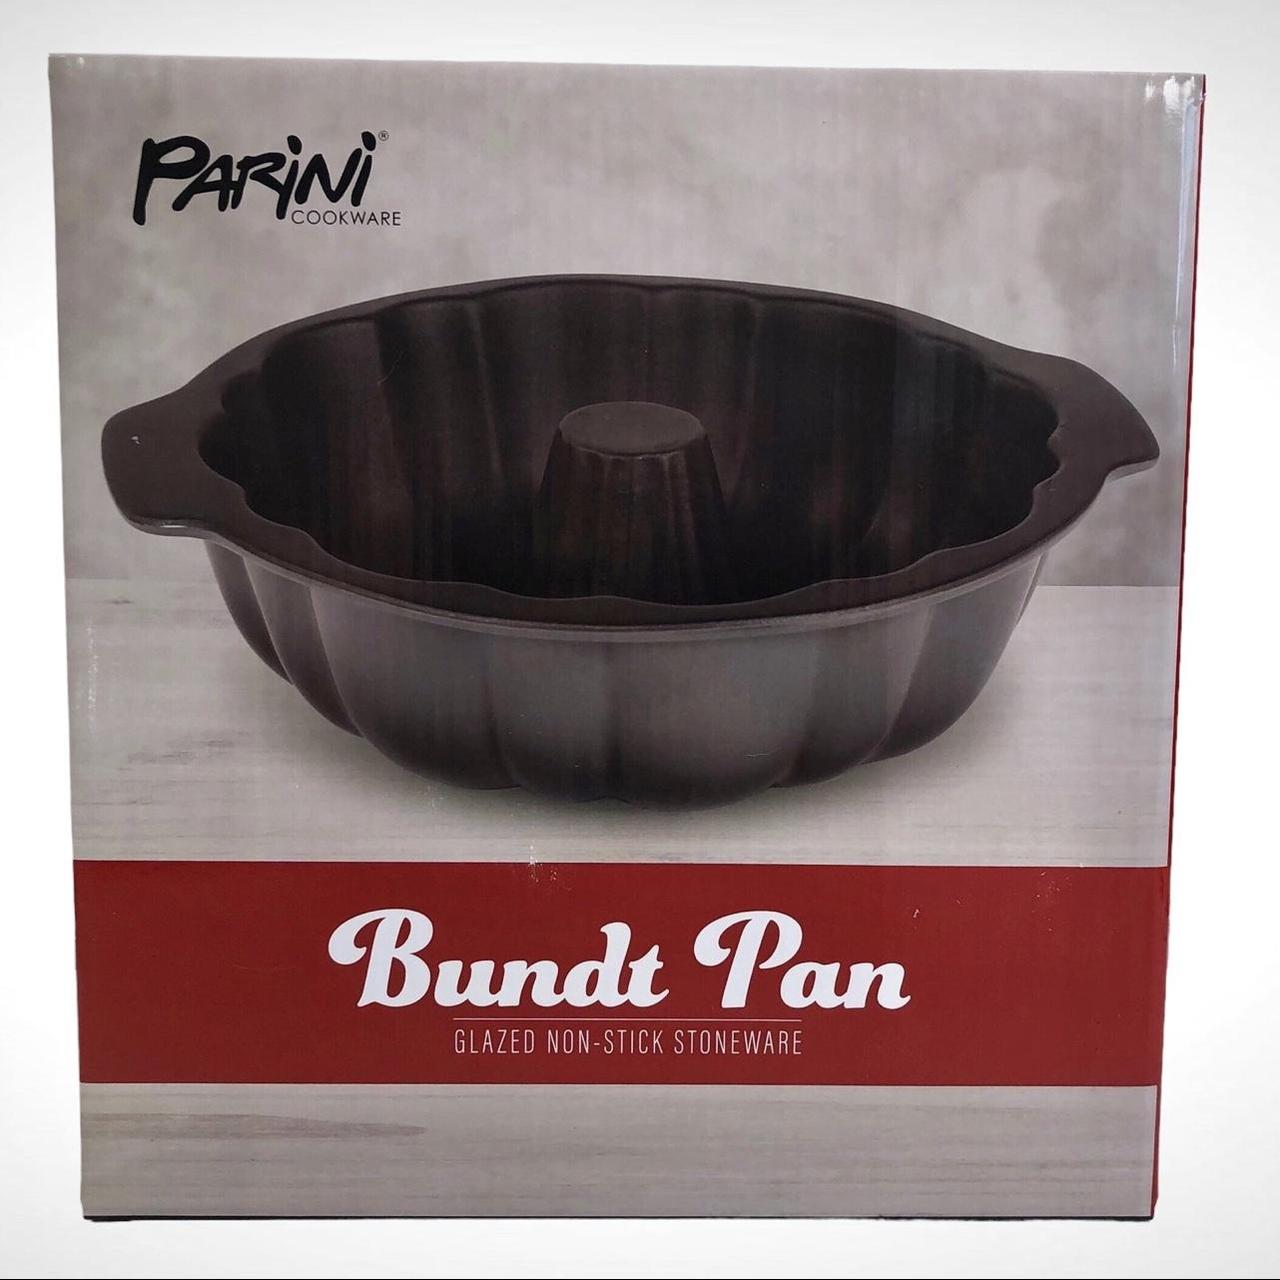 Parini Cookware BUNDT PAN Glazed Non-Stick - Depop